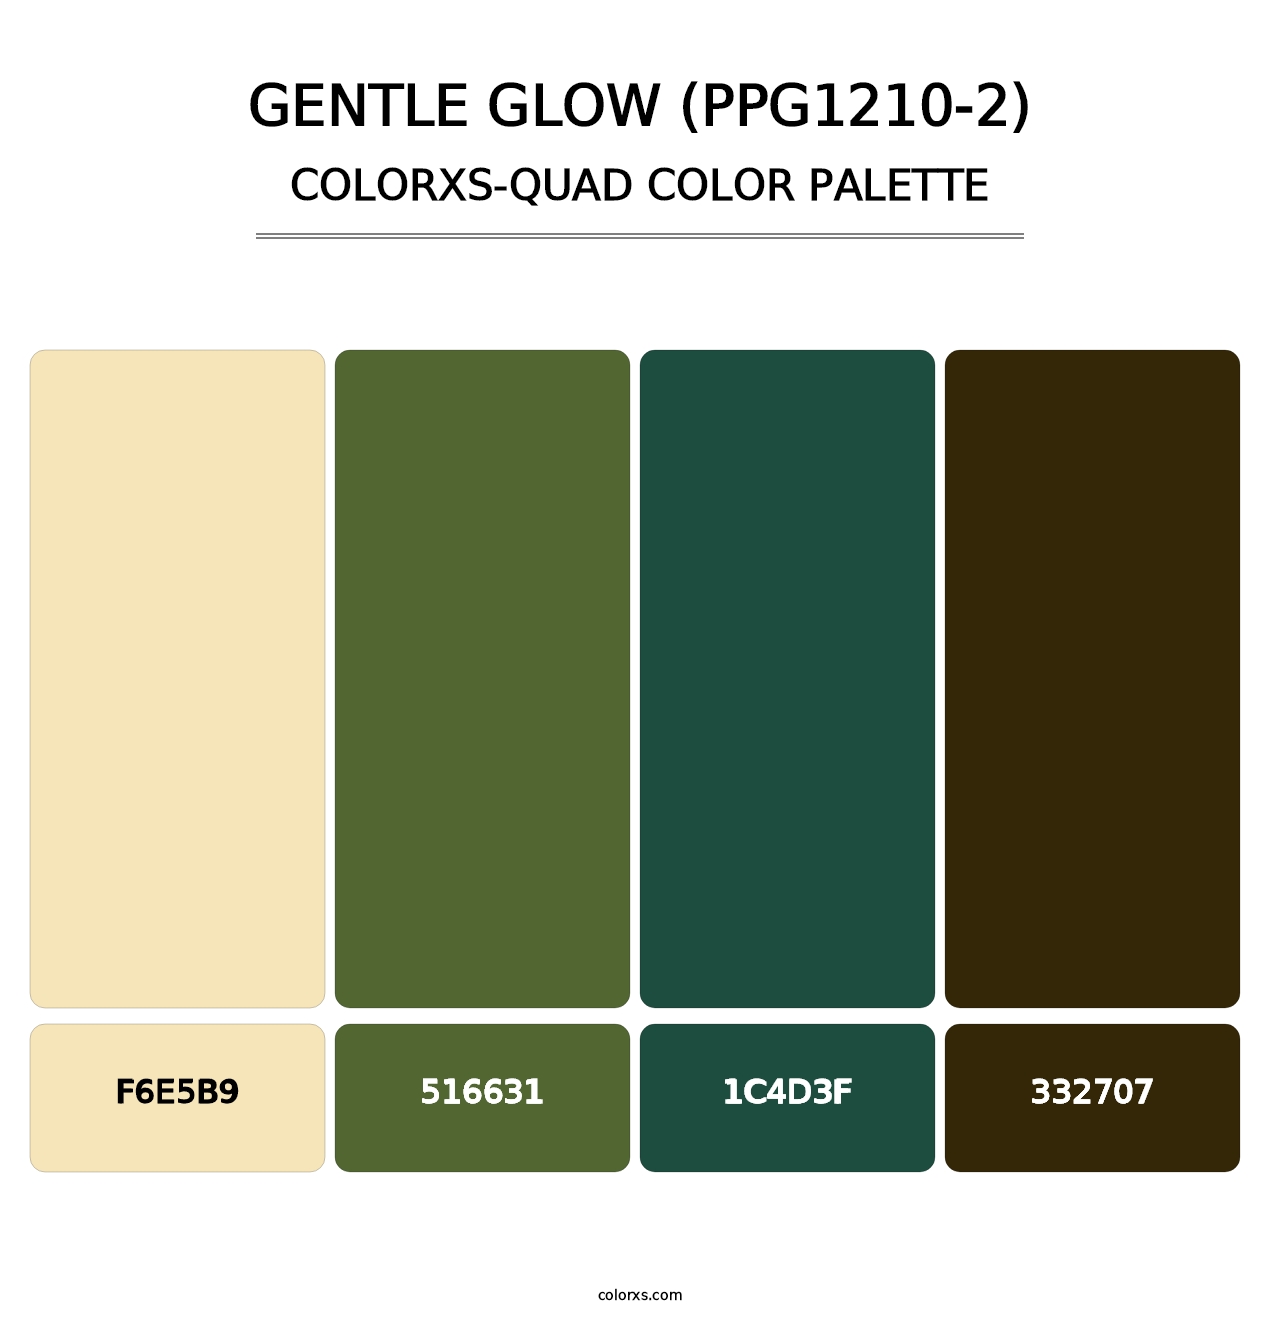 Gentle Glow (PPG1210-2) - Colorxs Quad Palette